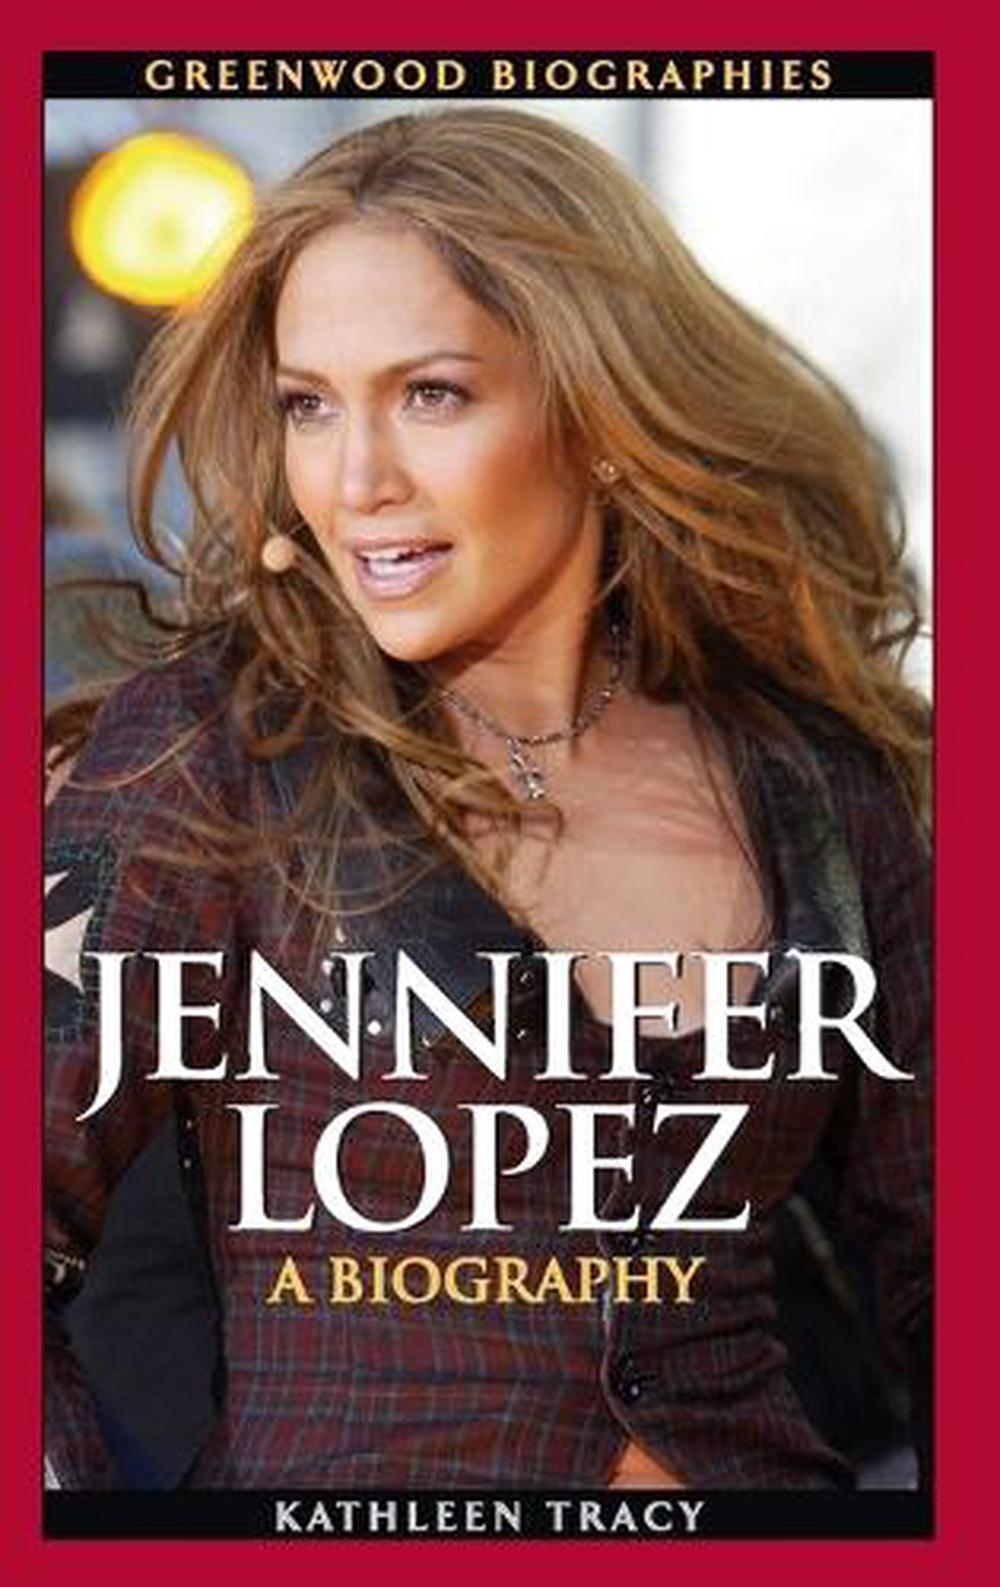 the biography of jennifer lopez